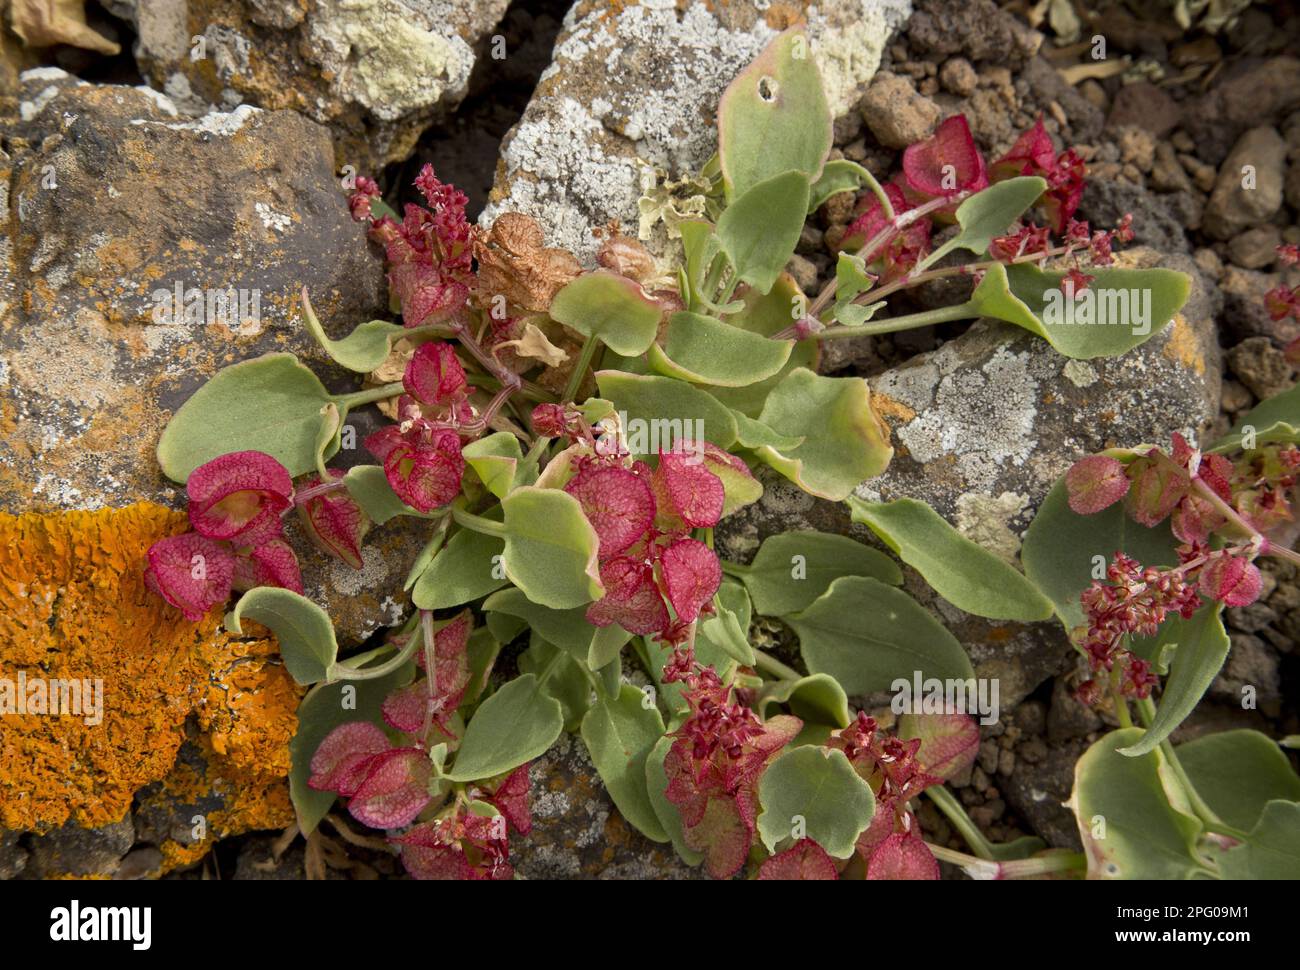 Bladderwrack (Rumex vesicarius var. rhodophysa) in flower and fruit, growing on lava, Lanzarote, Canary Islands Stock Photo